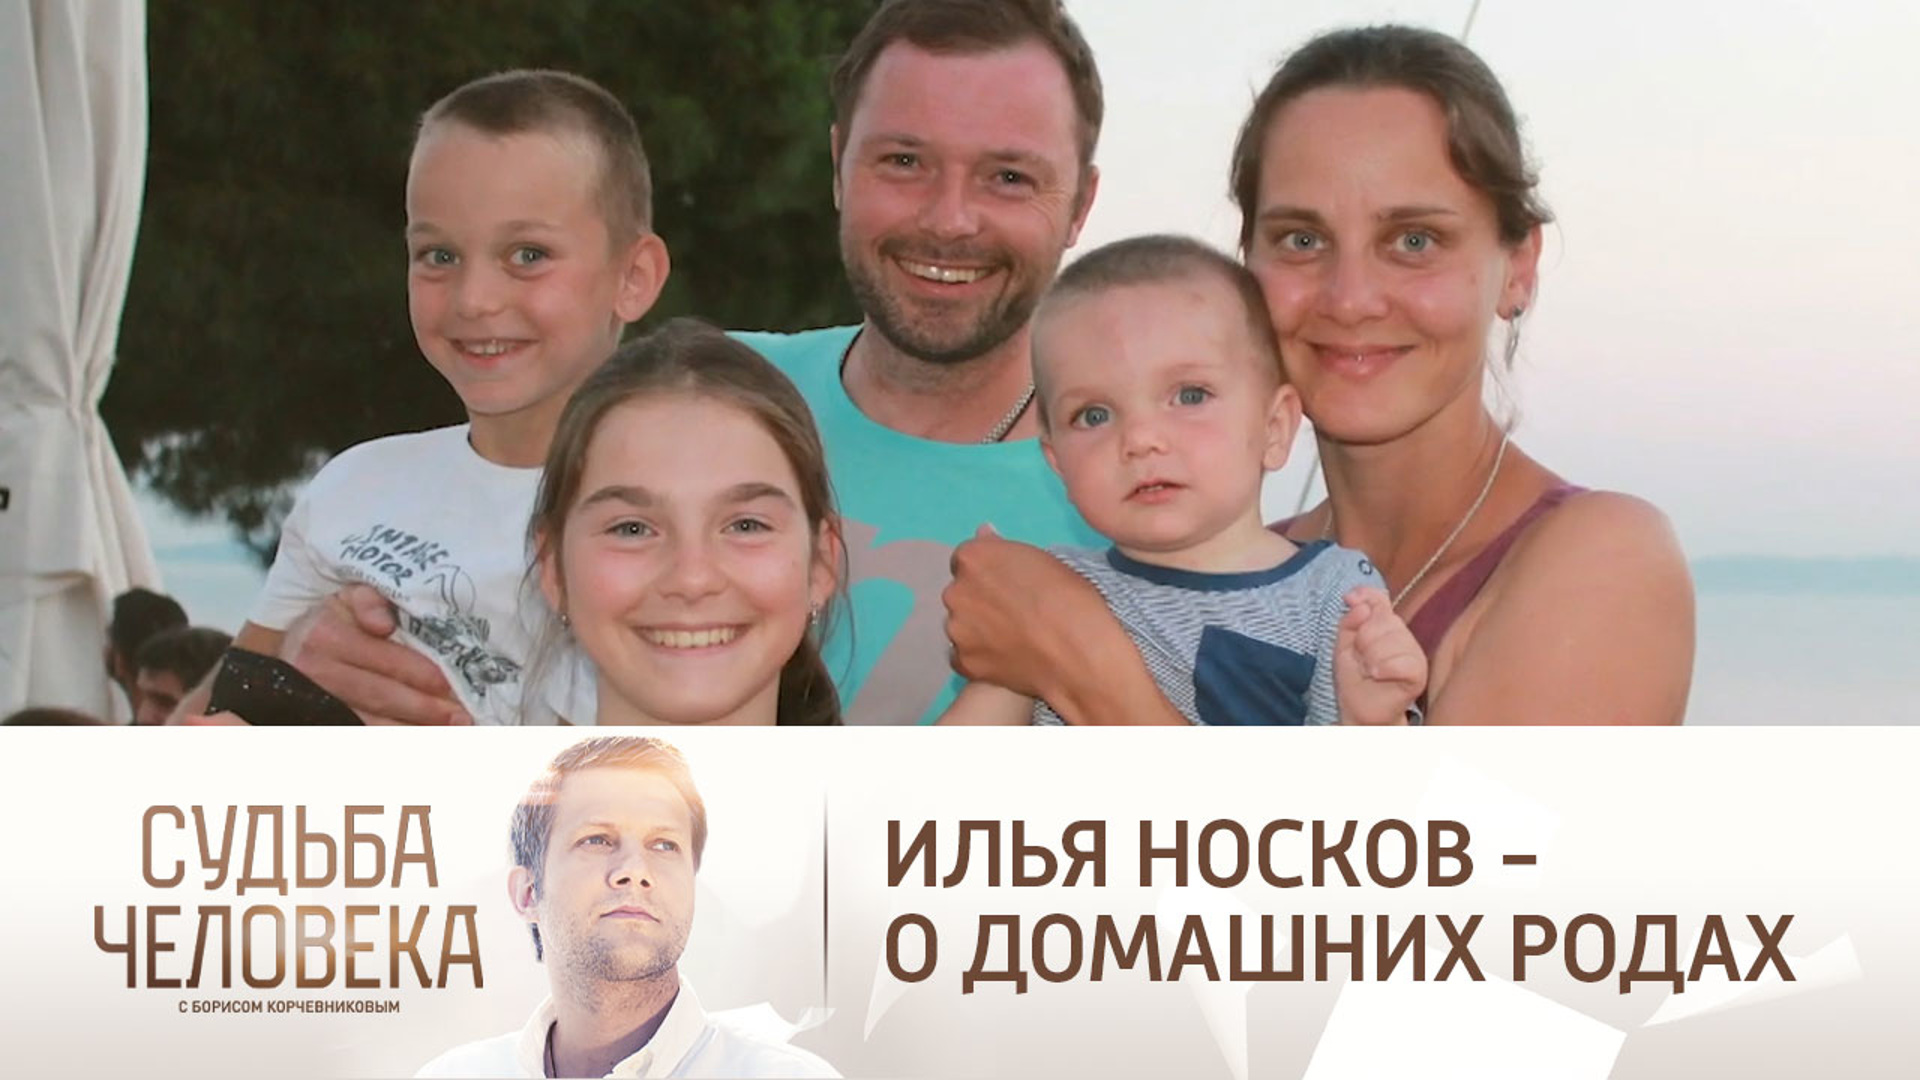 Илья носков актер биография личная жизнь дети